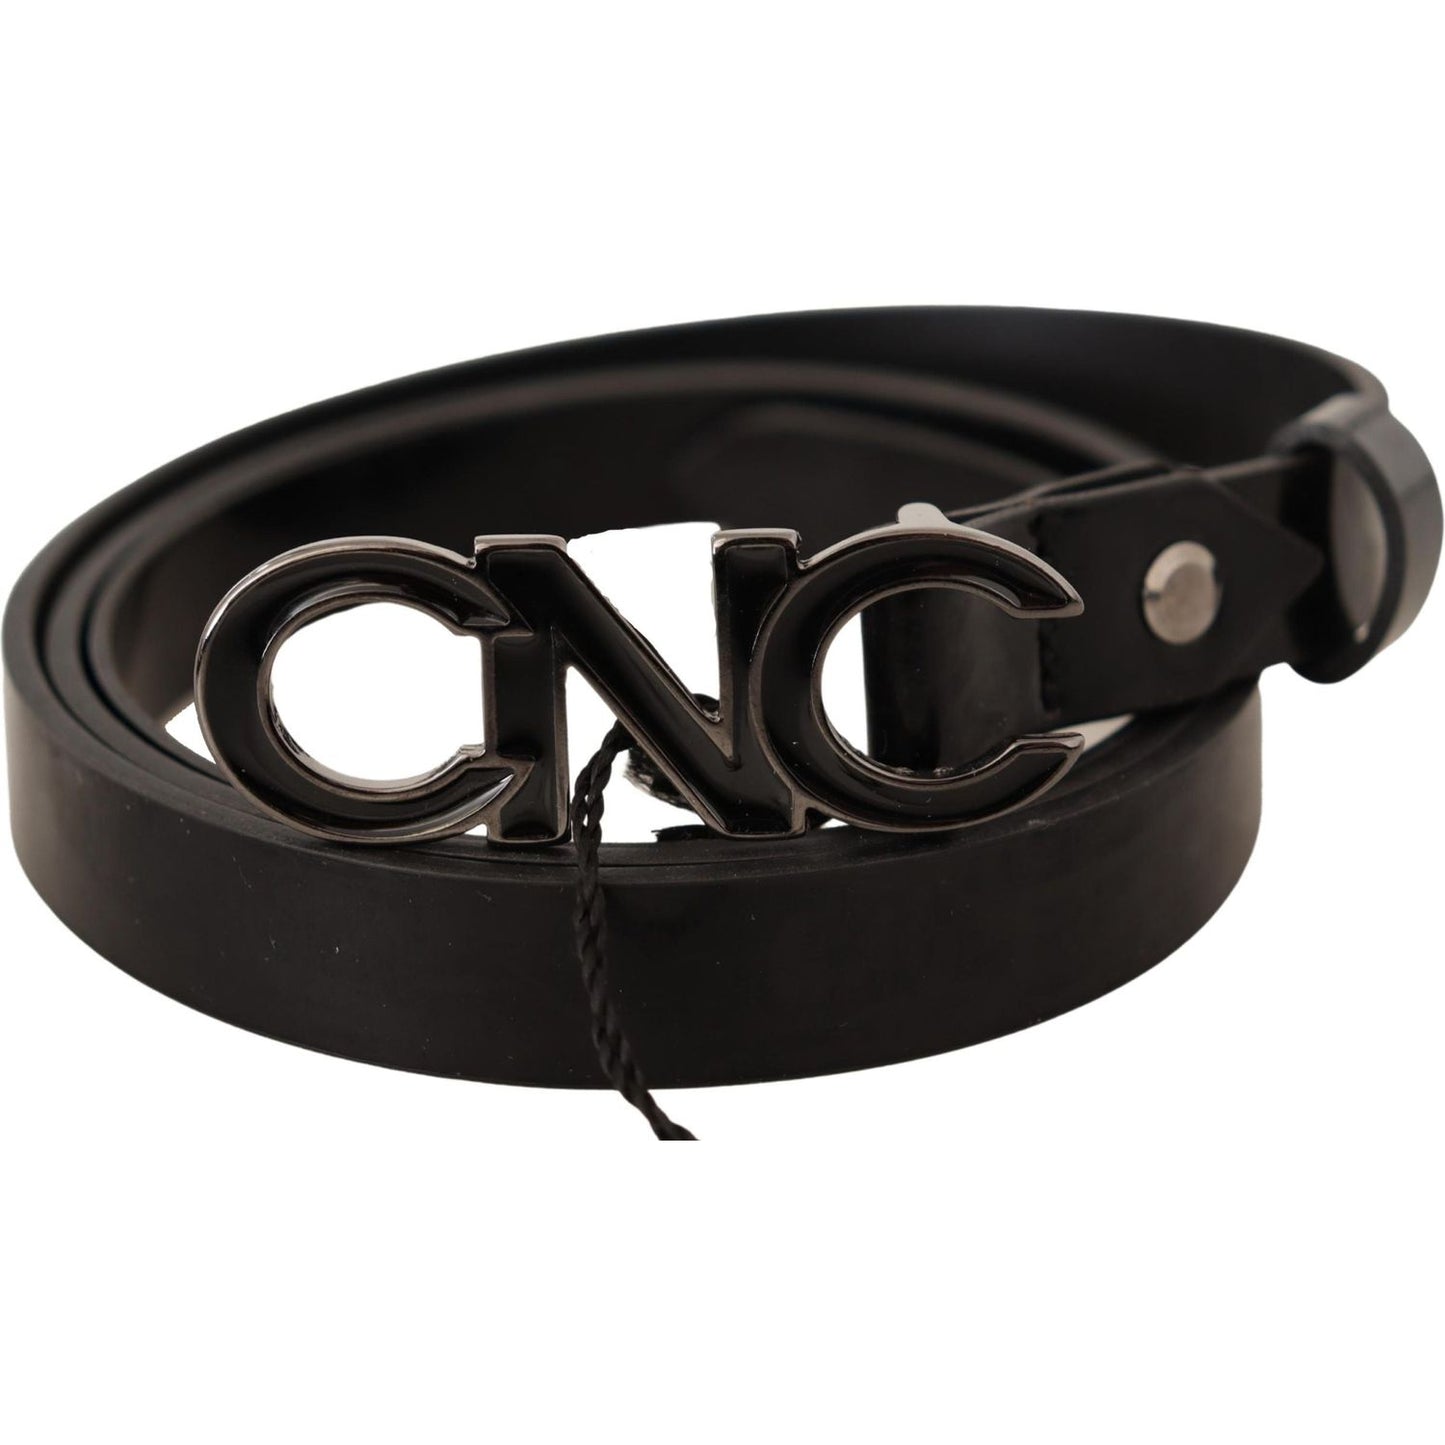 Costume National Elegant Black Leather Fashion Belt black-leather-letter-logo-buckle-belt WOMAN BELTS IMG_7334-scaled-0afbfb90-74a.jpg